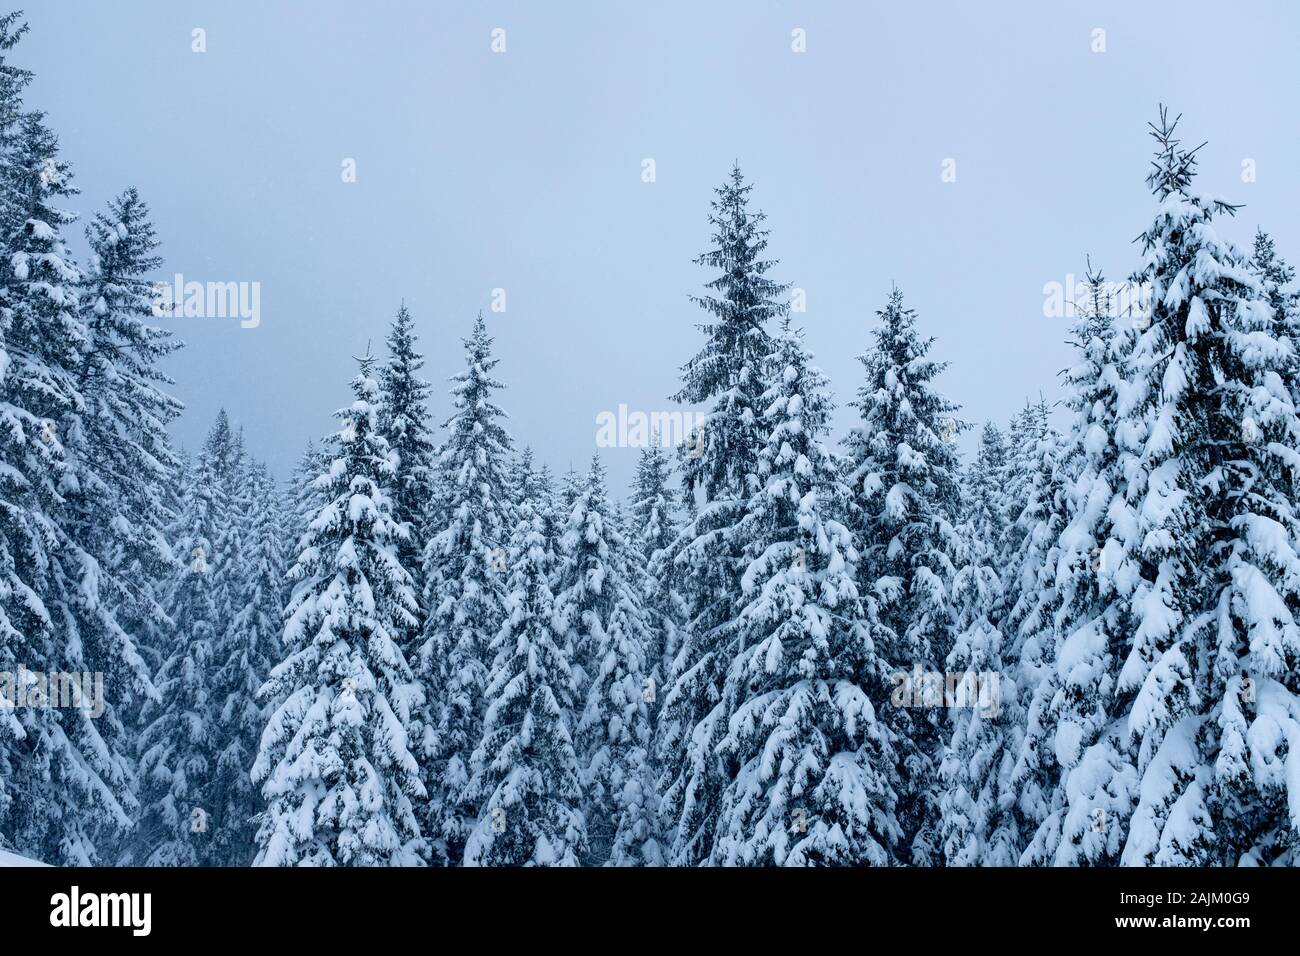 La forêt couverte de neige, Zakopane, Pologne Banque D'Images